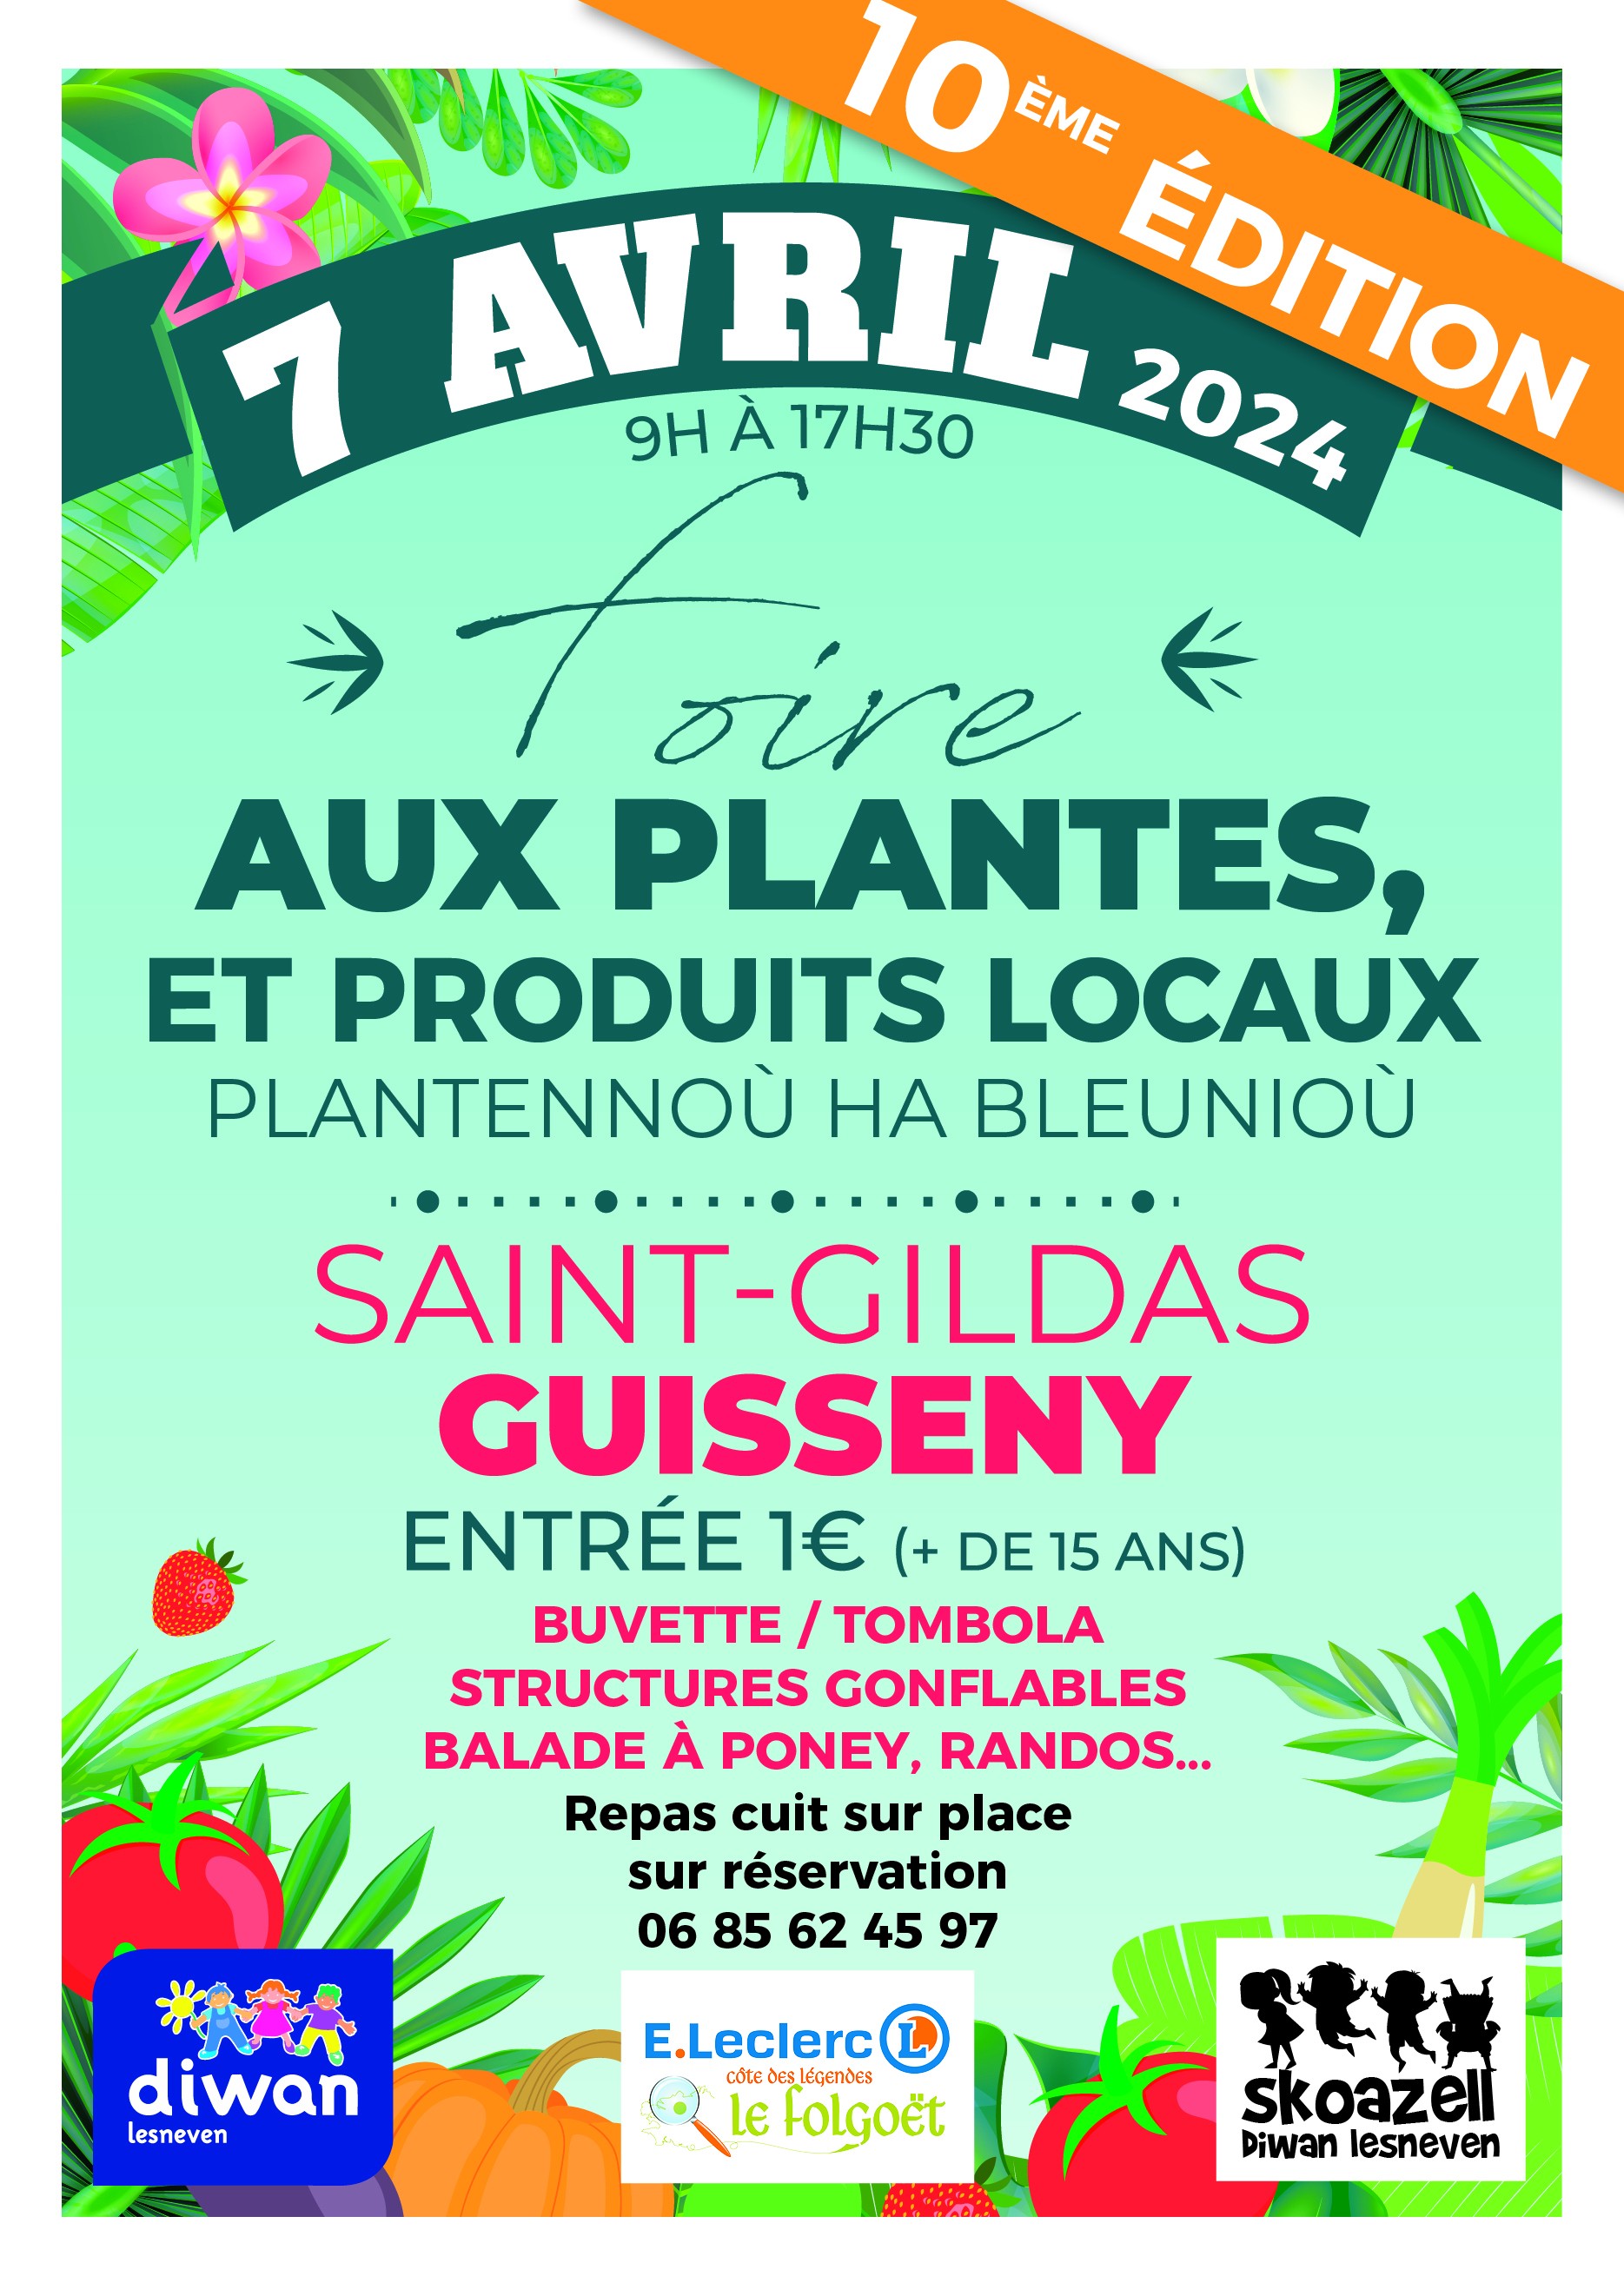 Foire aux plantes et produits locaux de Guisseny